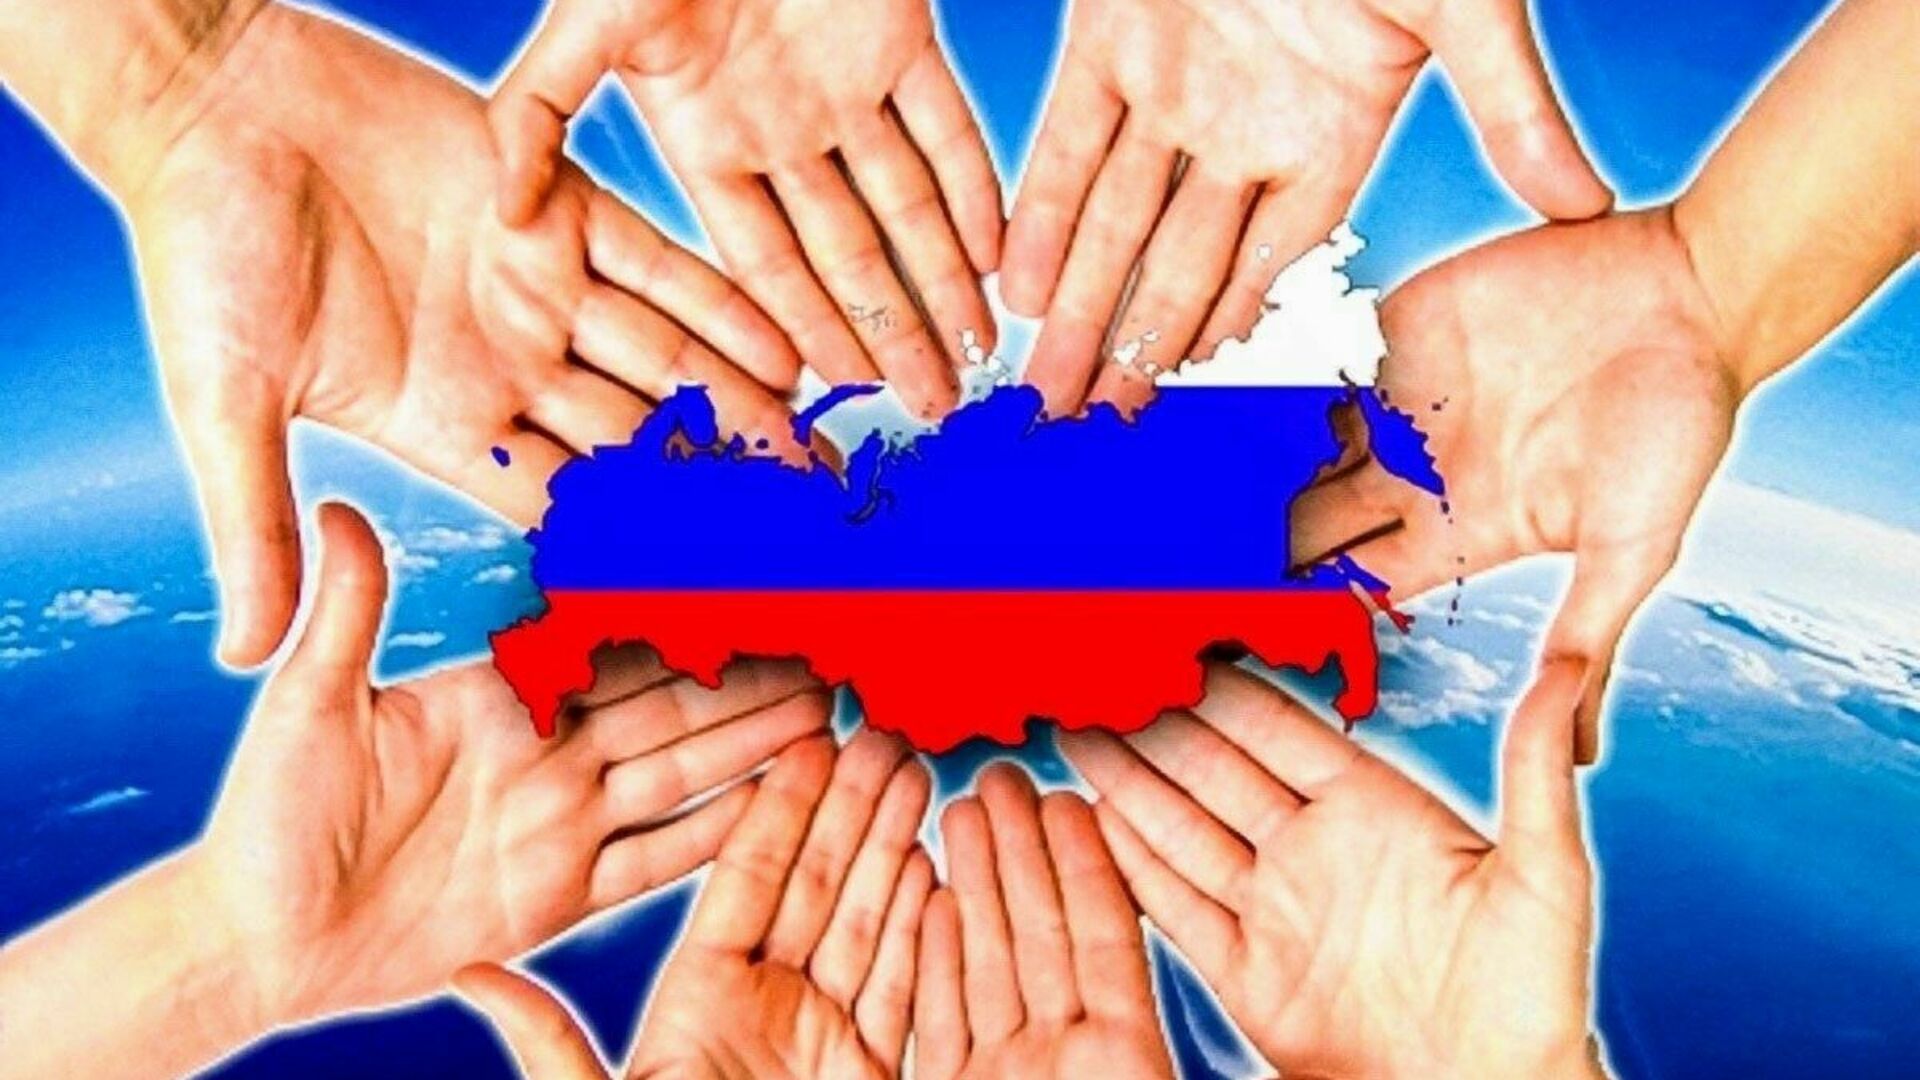 Станем сильнее вместе. Единство народов России. В единстве наша сила. Единство картинки. Наша сила в единстве народов.